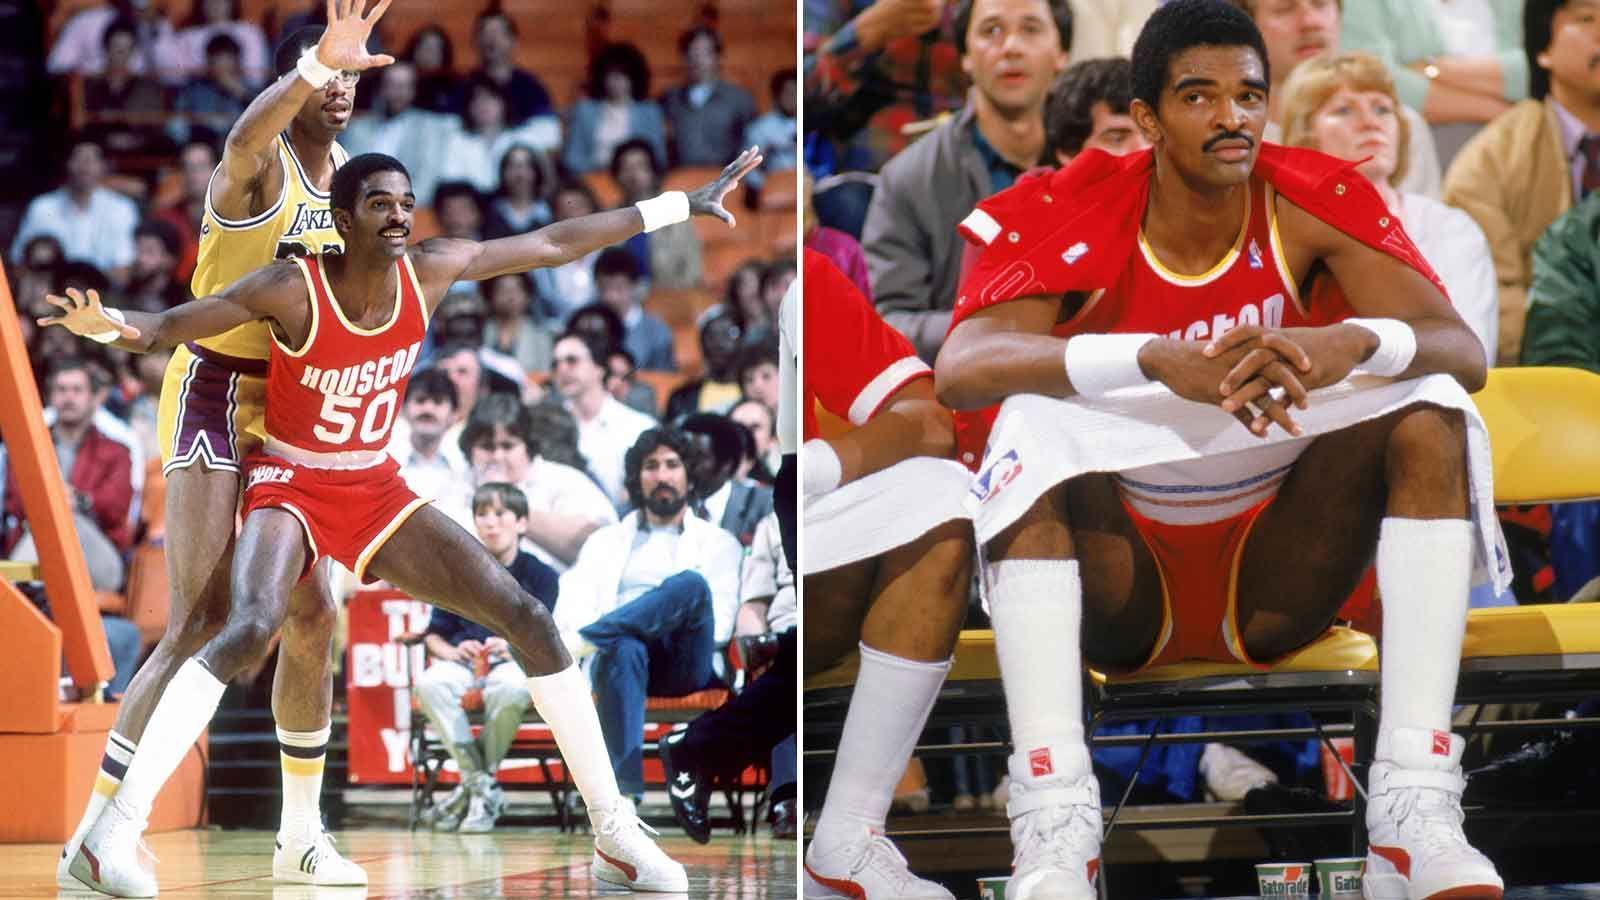 
                <strong>Platz 10 (geteilt): Ralph Sampson</strong><br>
                &#x2022; Größe: 2,24 Meter (US-Größe: 7 foot 4 inches)<br>&#x2022; Teams: Houston Rockets (1983-1987), Golden State Warriors (1987-1989), Sacramento Kings (1989-1991), Washington Bullets (1991-1992)<br>&#x2022; Nationalität: USA<br>&#x2022; Stats: 7.039 Punkte und 4.011 Rebounds in 456 Spielen<br>
              